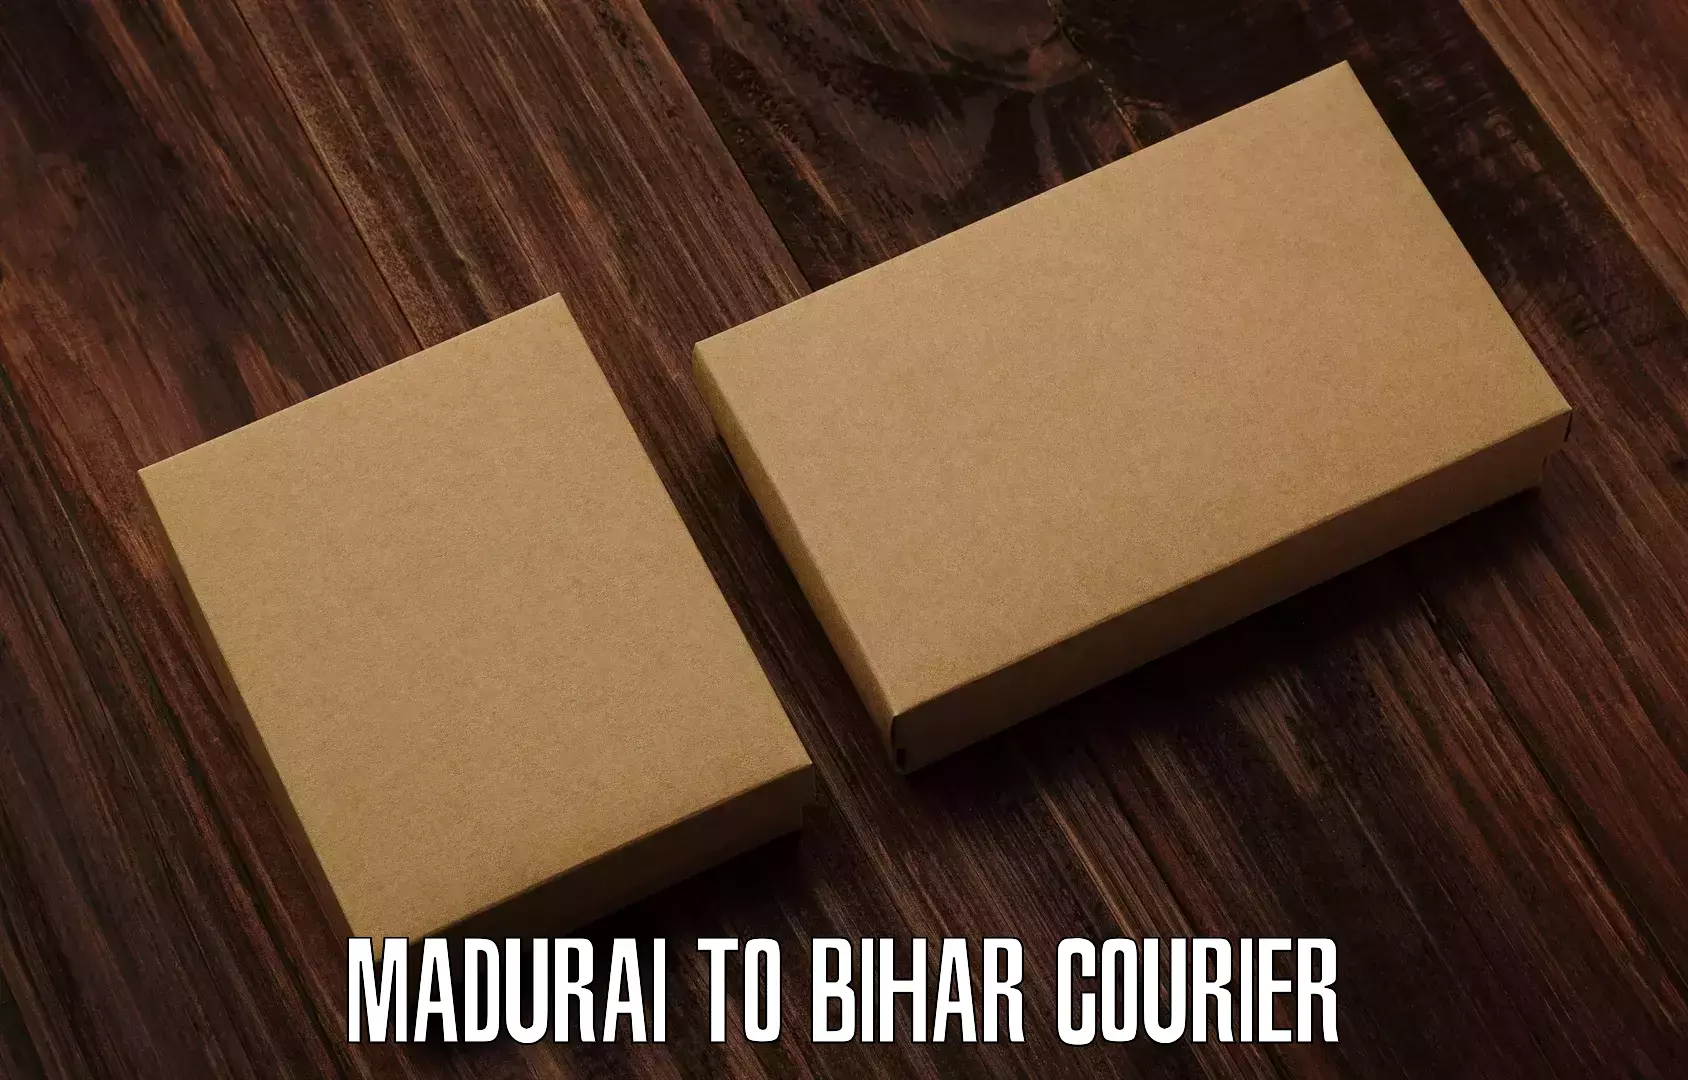 User-friendly delivery service Madurai to Hasanpura